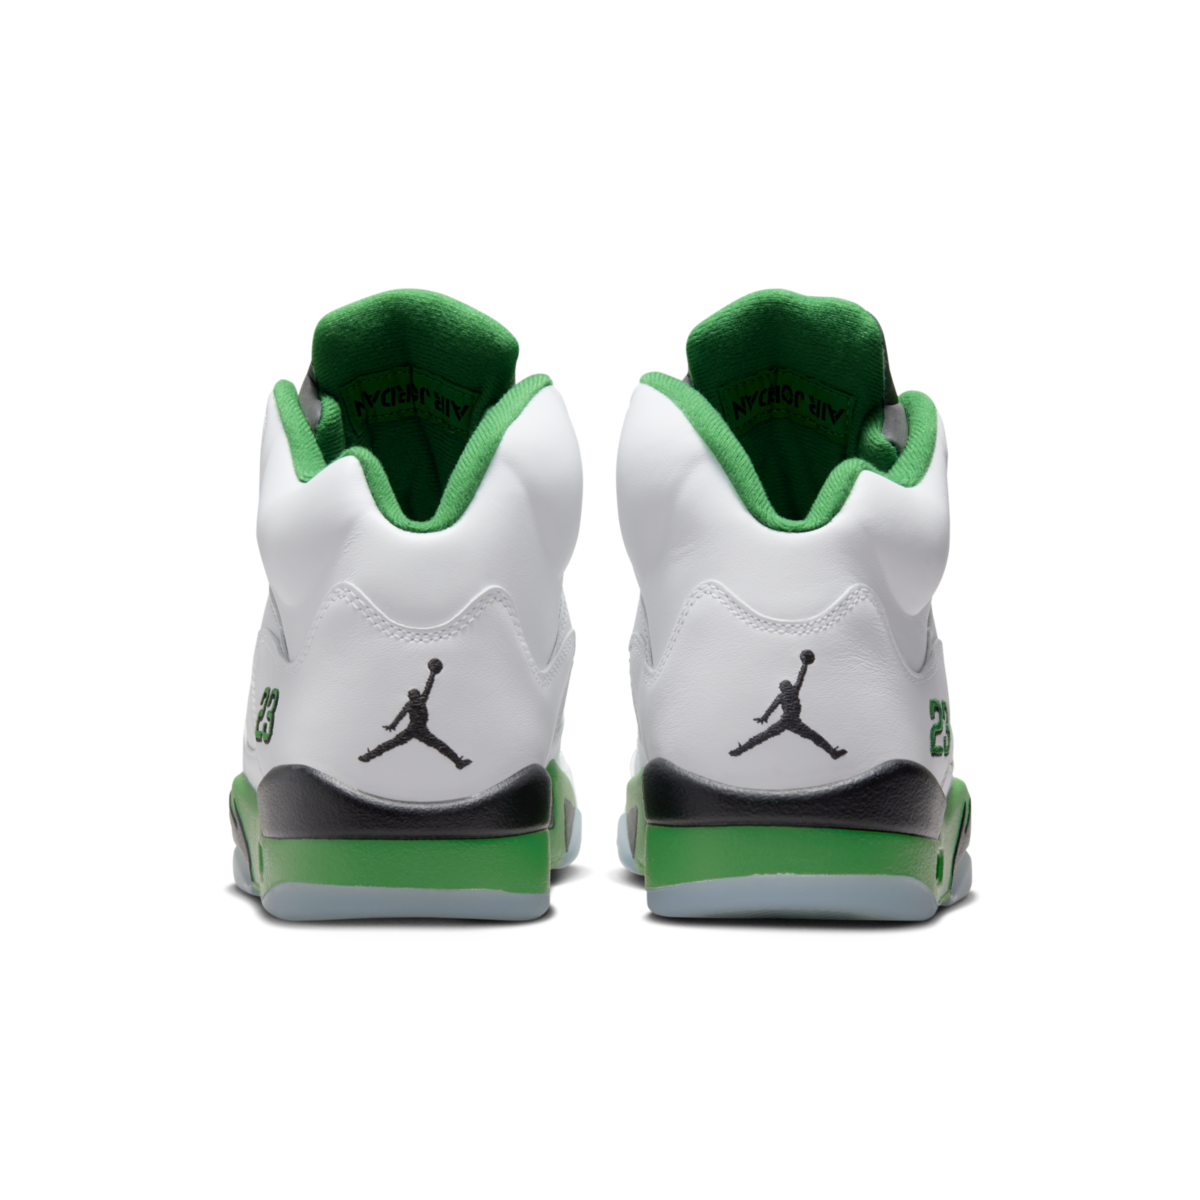 Air Jordan 5 WMNS 'Lucky Green'